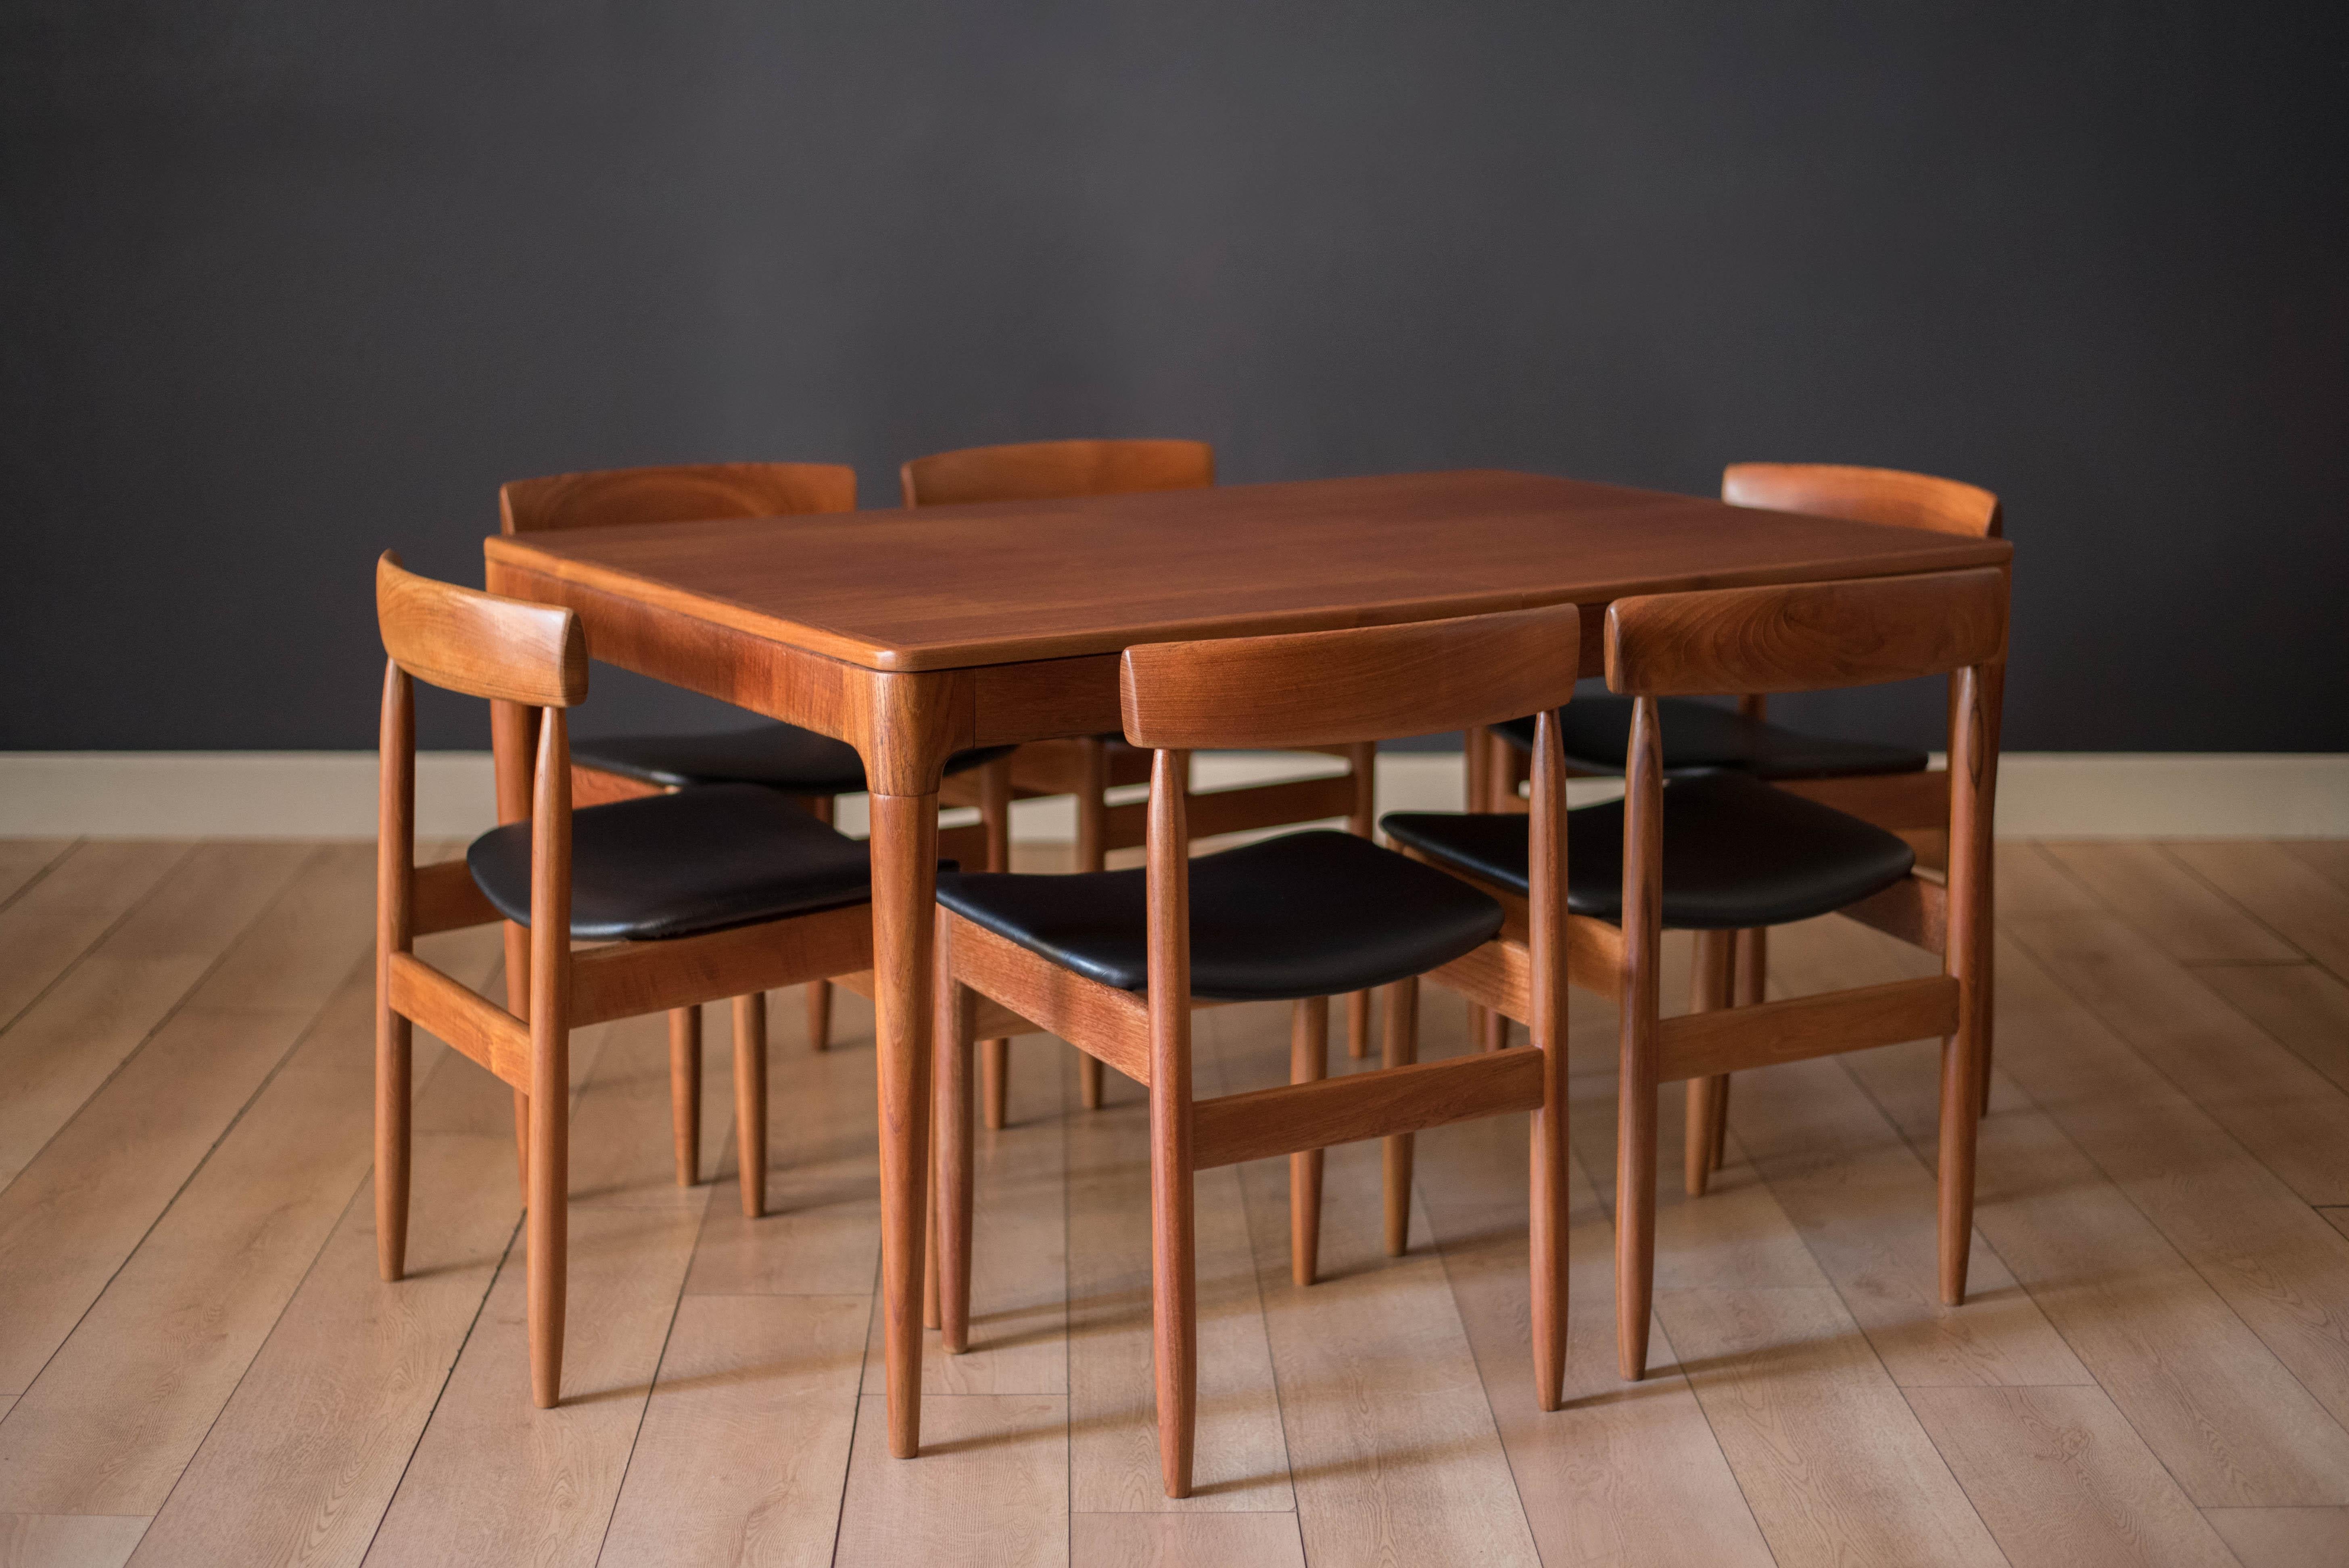 Mid-20th Century Vintage Danish Teak Extension Dining Table by Arne Hovmand-Olsen for Mogens Kold